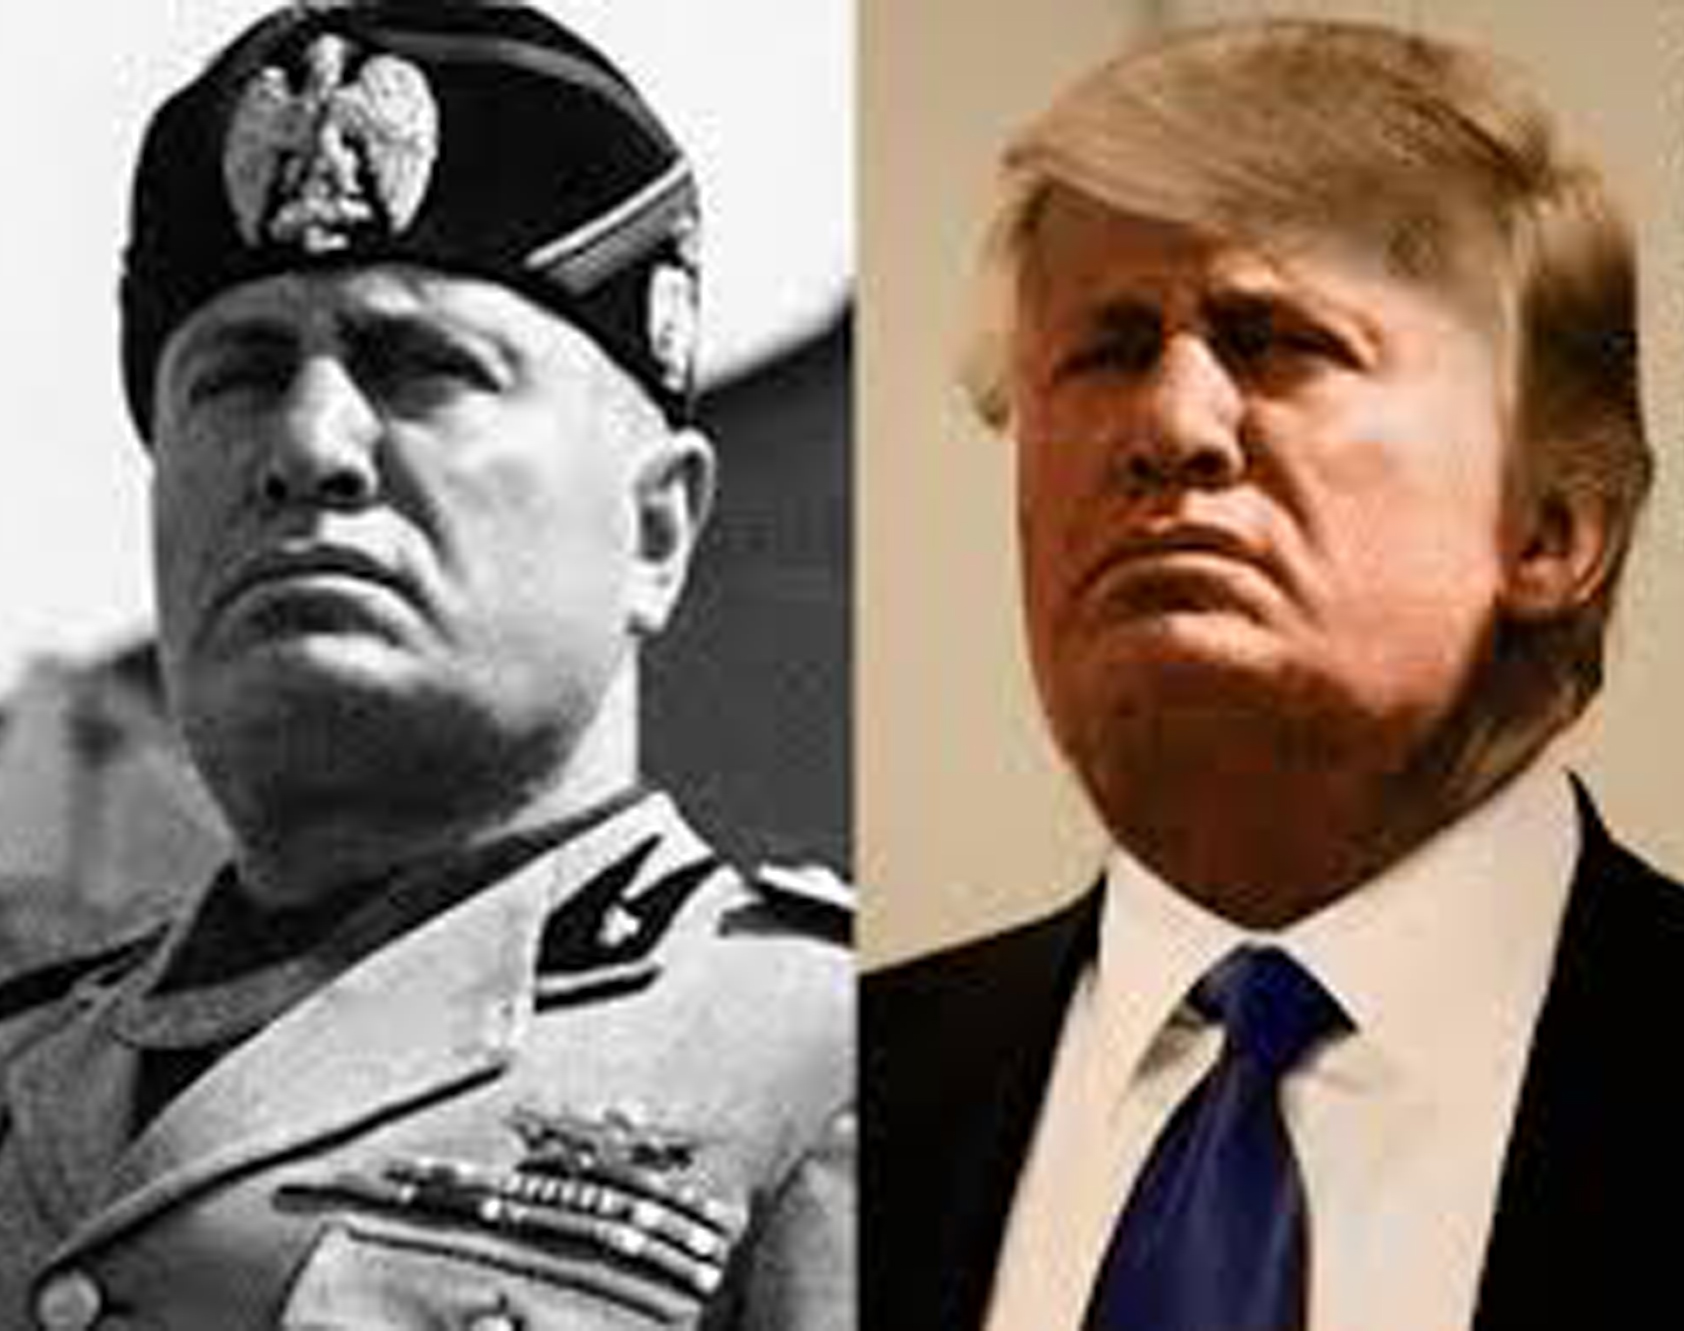 Trump-Mussolini-Fascist-Twins-1.jpg